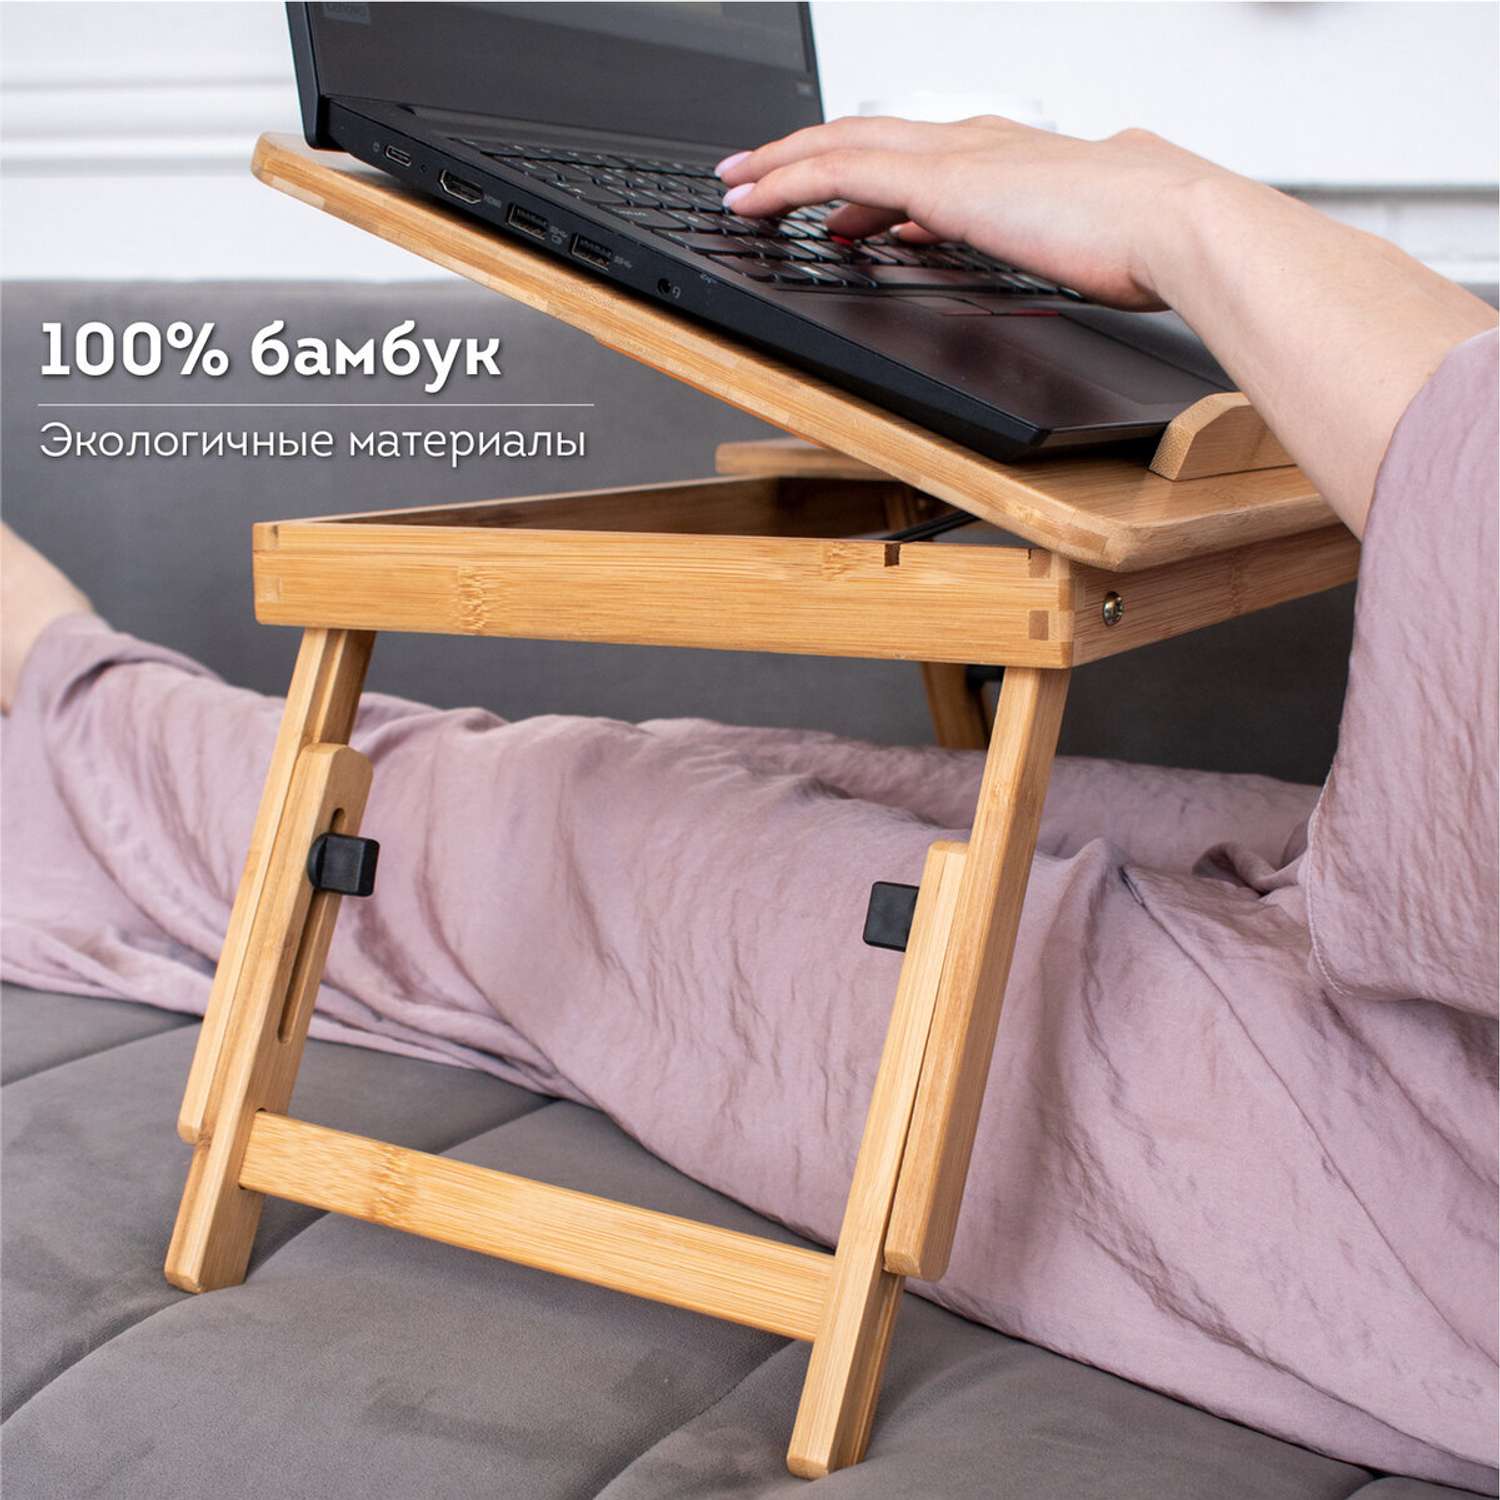 Столик складной для ноутбука DASWERK в кровать для завтрака деревянный 54х34х27 см - фото 6